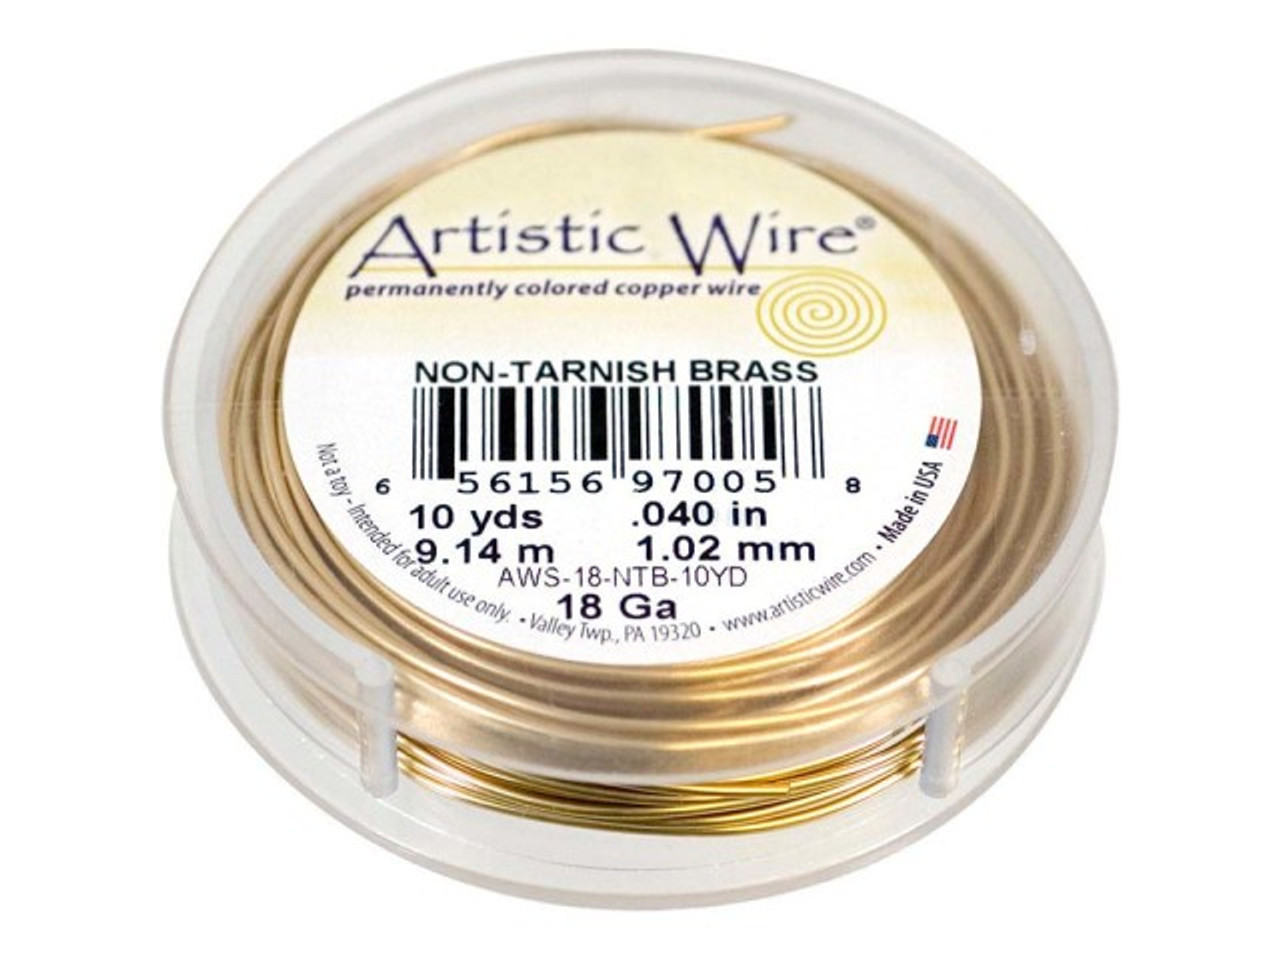 Beadalon 5' Artistic Wire Colored Copper 10 Gauge Craft Wire - Bare Copper